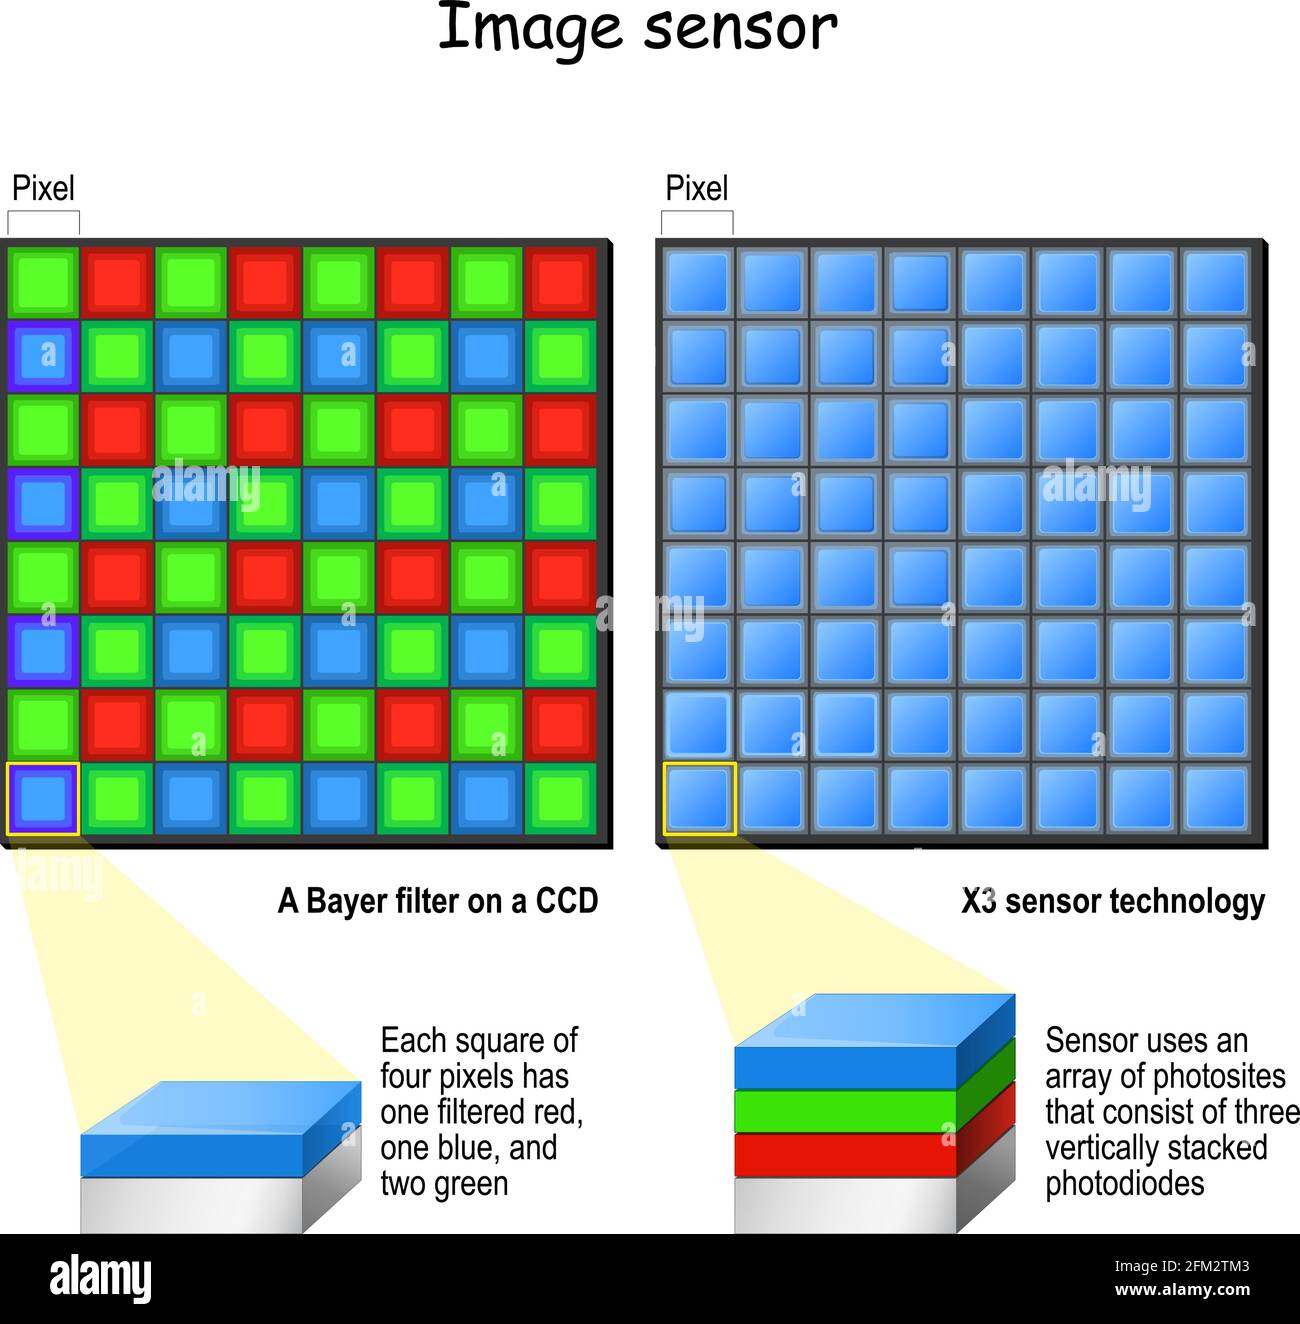 Tecnologia a sensori X3 e filtro Bayer su CCD. Confronto e differenze.  Sezione trasversale di un pixel, fotodiodi. Illustrazione vettoriale  Immagine e Vettoriale - Alamy